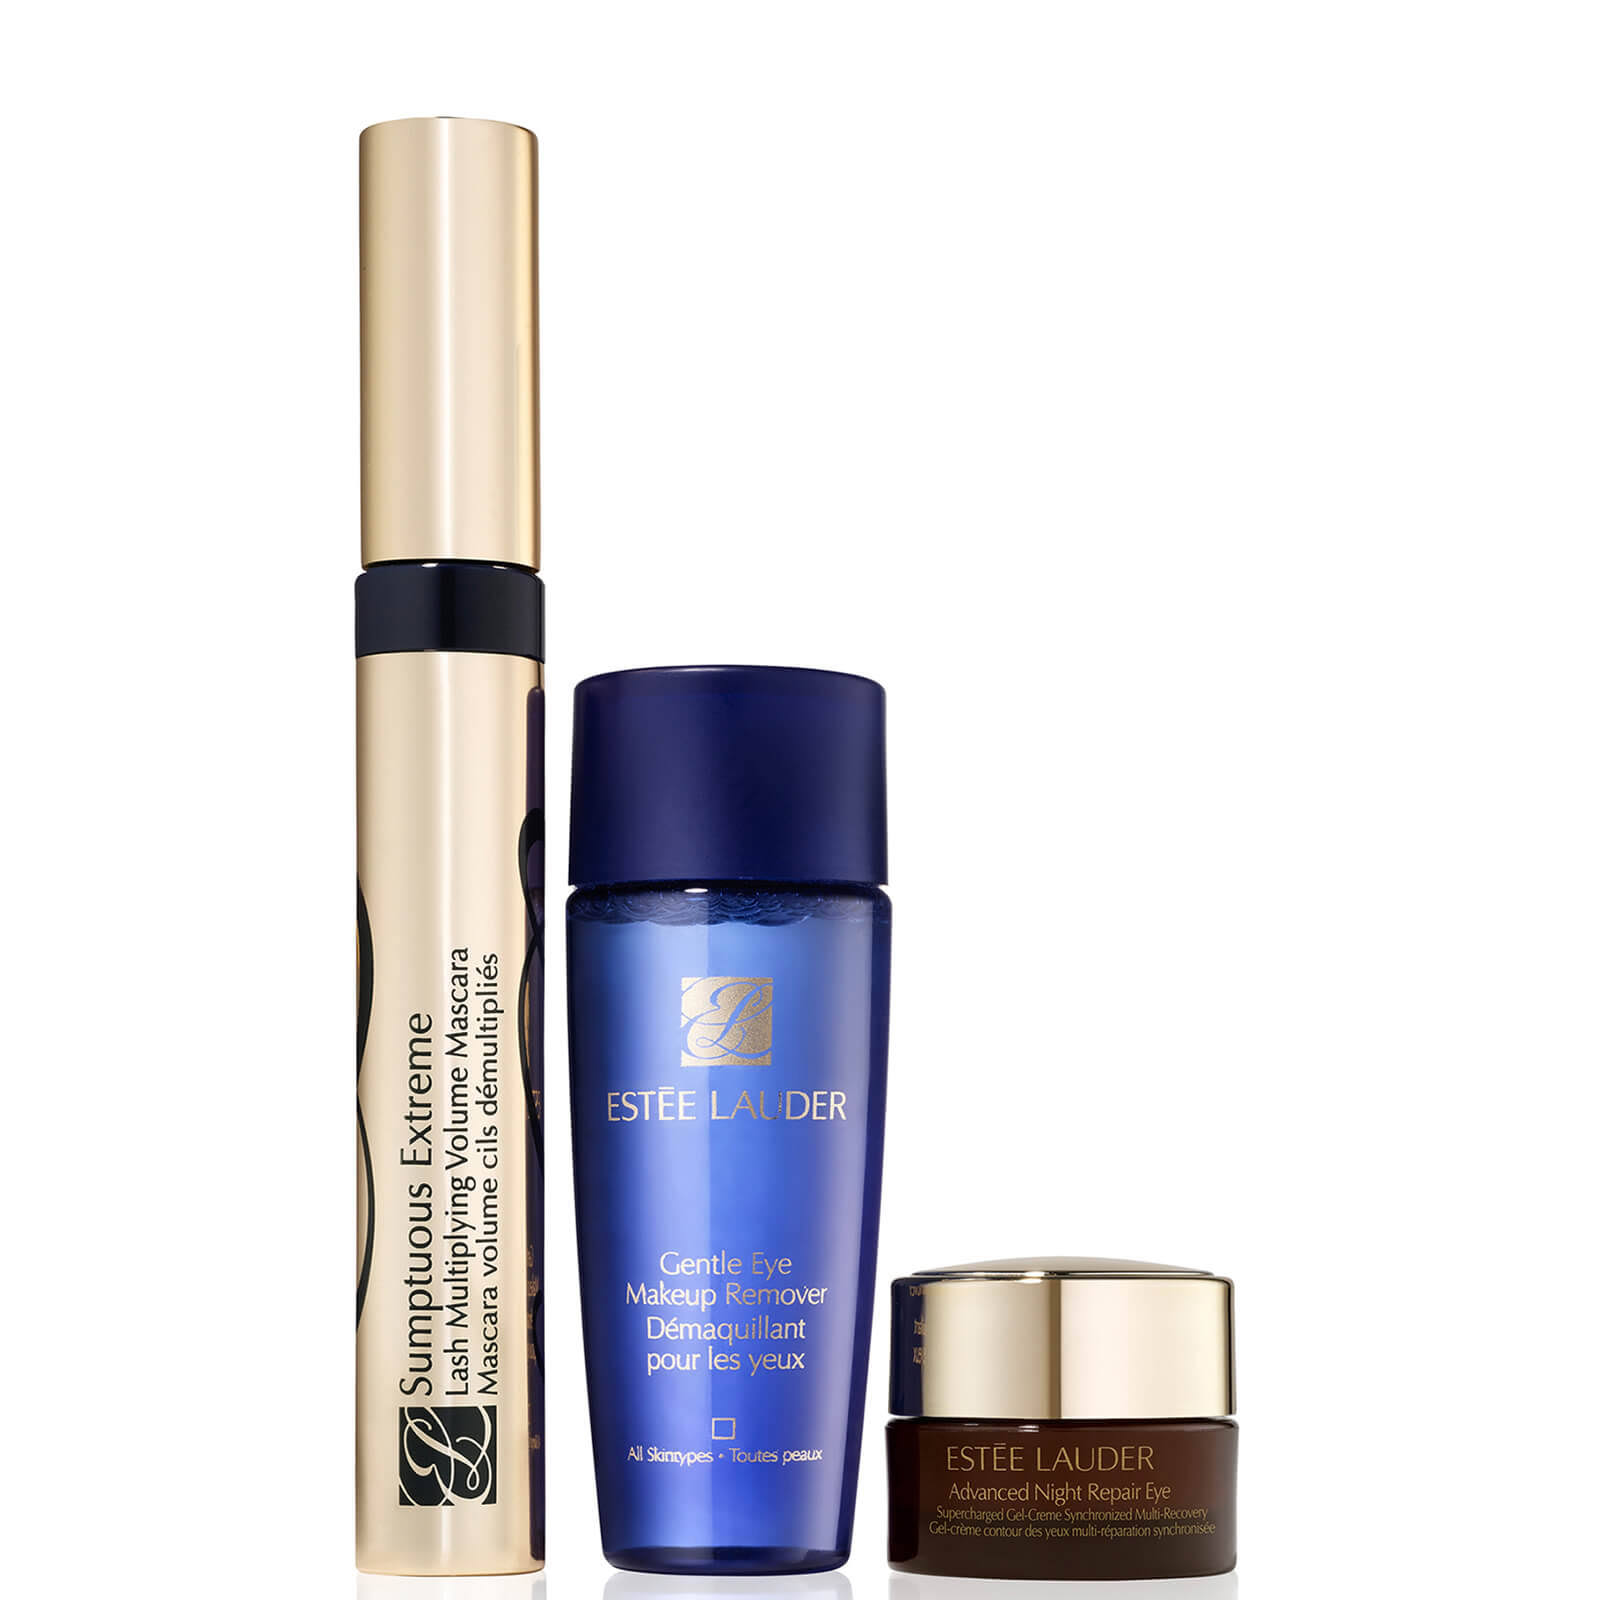 Estee Lauder Mascara Essentials Gift Set